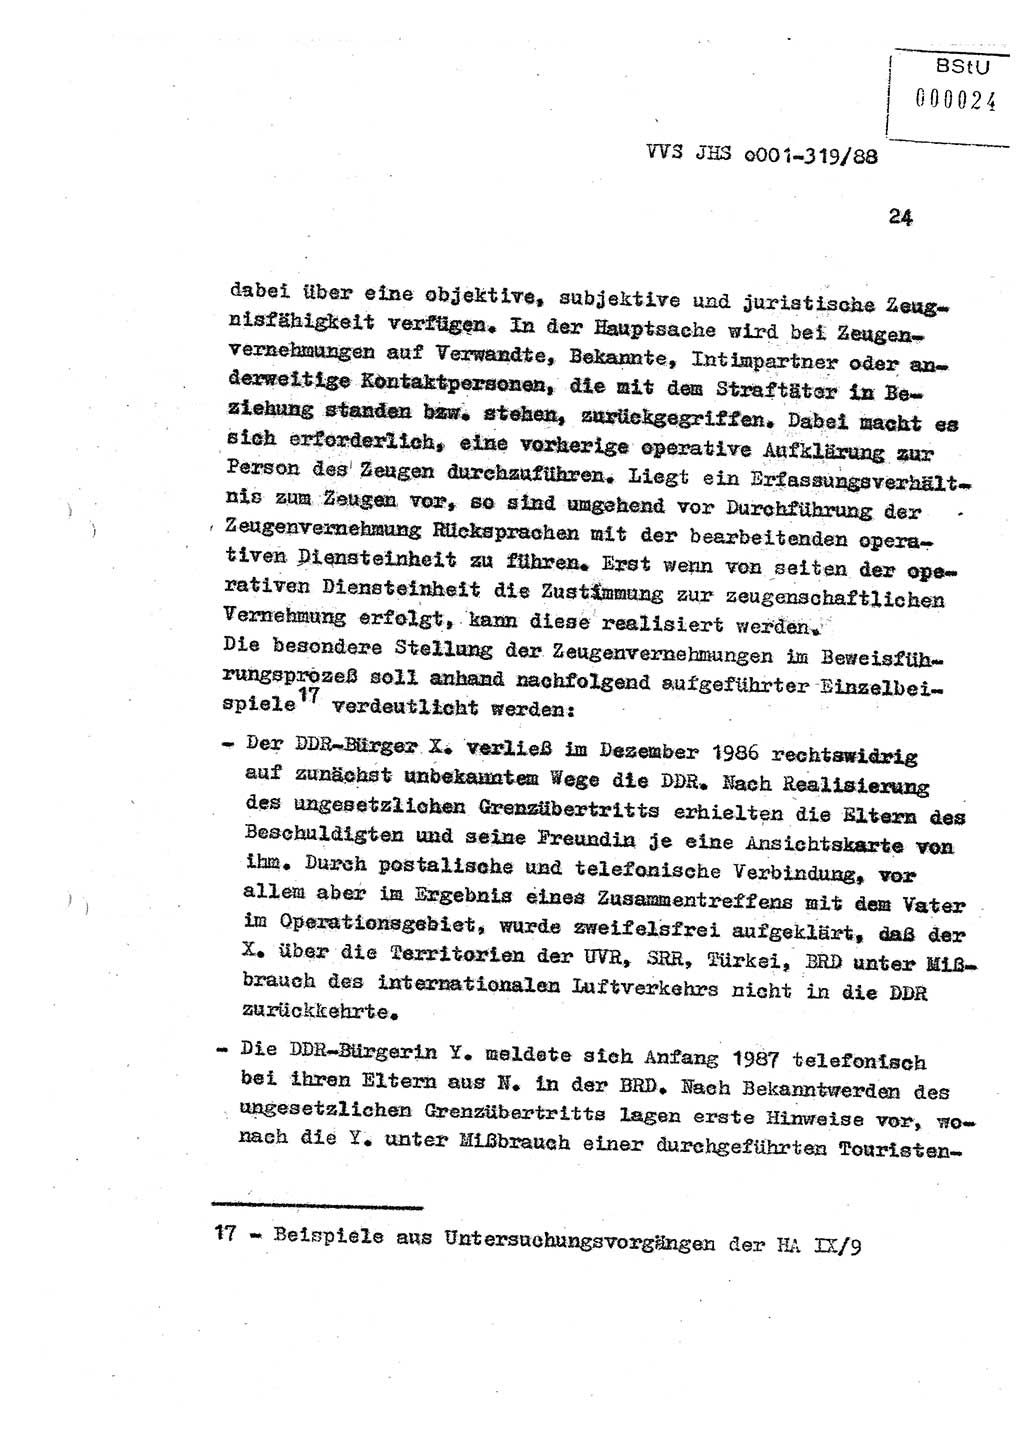 Diplomarbeit Offiziersschüler Holger Zirnstein (HA Ⅸ/9), Ministerium für Staatssicherheit (MfS) [Deutsche Demokratische Republik (DDR)], Juristische Hochschule (JHS), Vertrauliche Verschlußsache (VVS) o001-319/88, Potsdam 1988, Blatt 24 (Dipl.-Arb. MfS DDR JHS VVS o001-319/88 1988, Bl. 24)